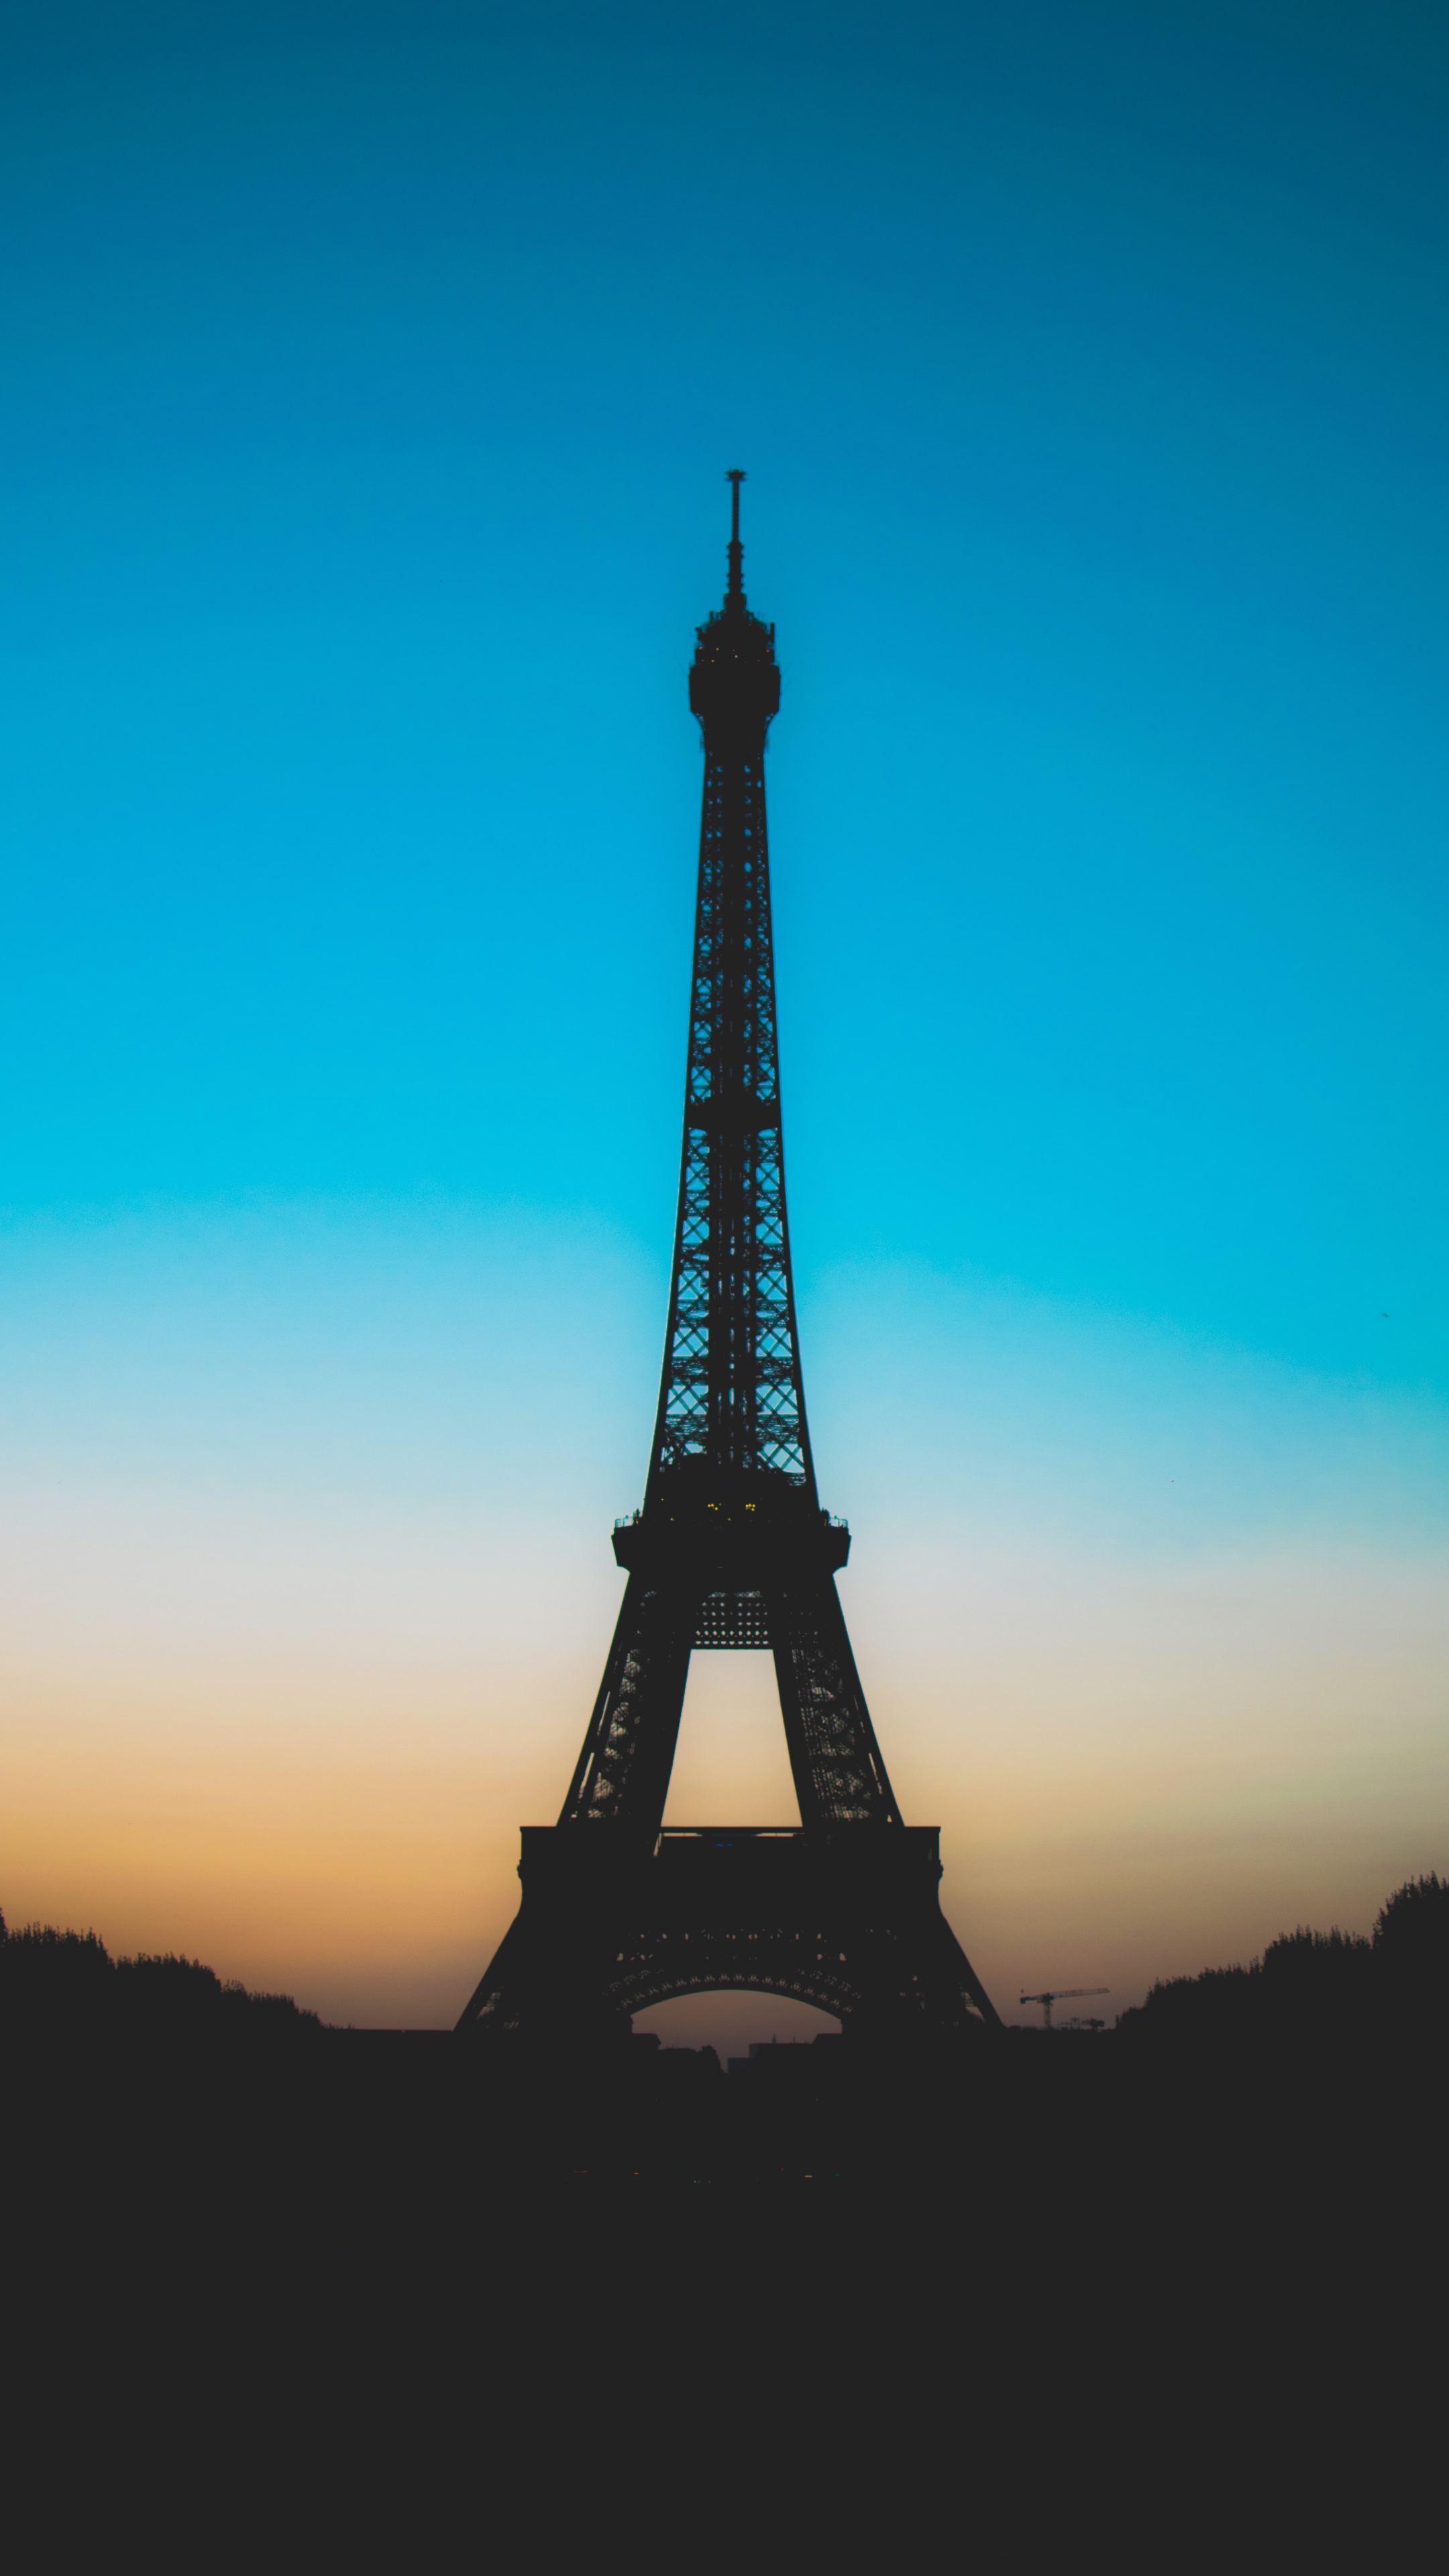 来自浪漫城市法国巴黎的埃菲尔铁塔高清摄影手机壁纸推荐下载